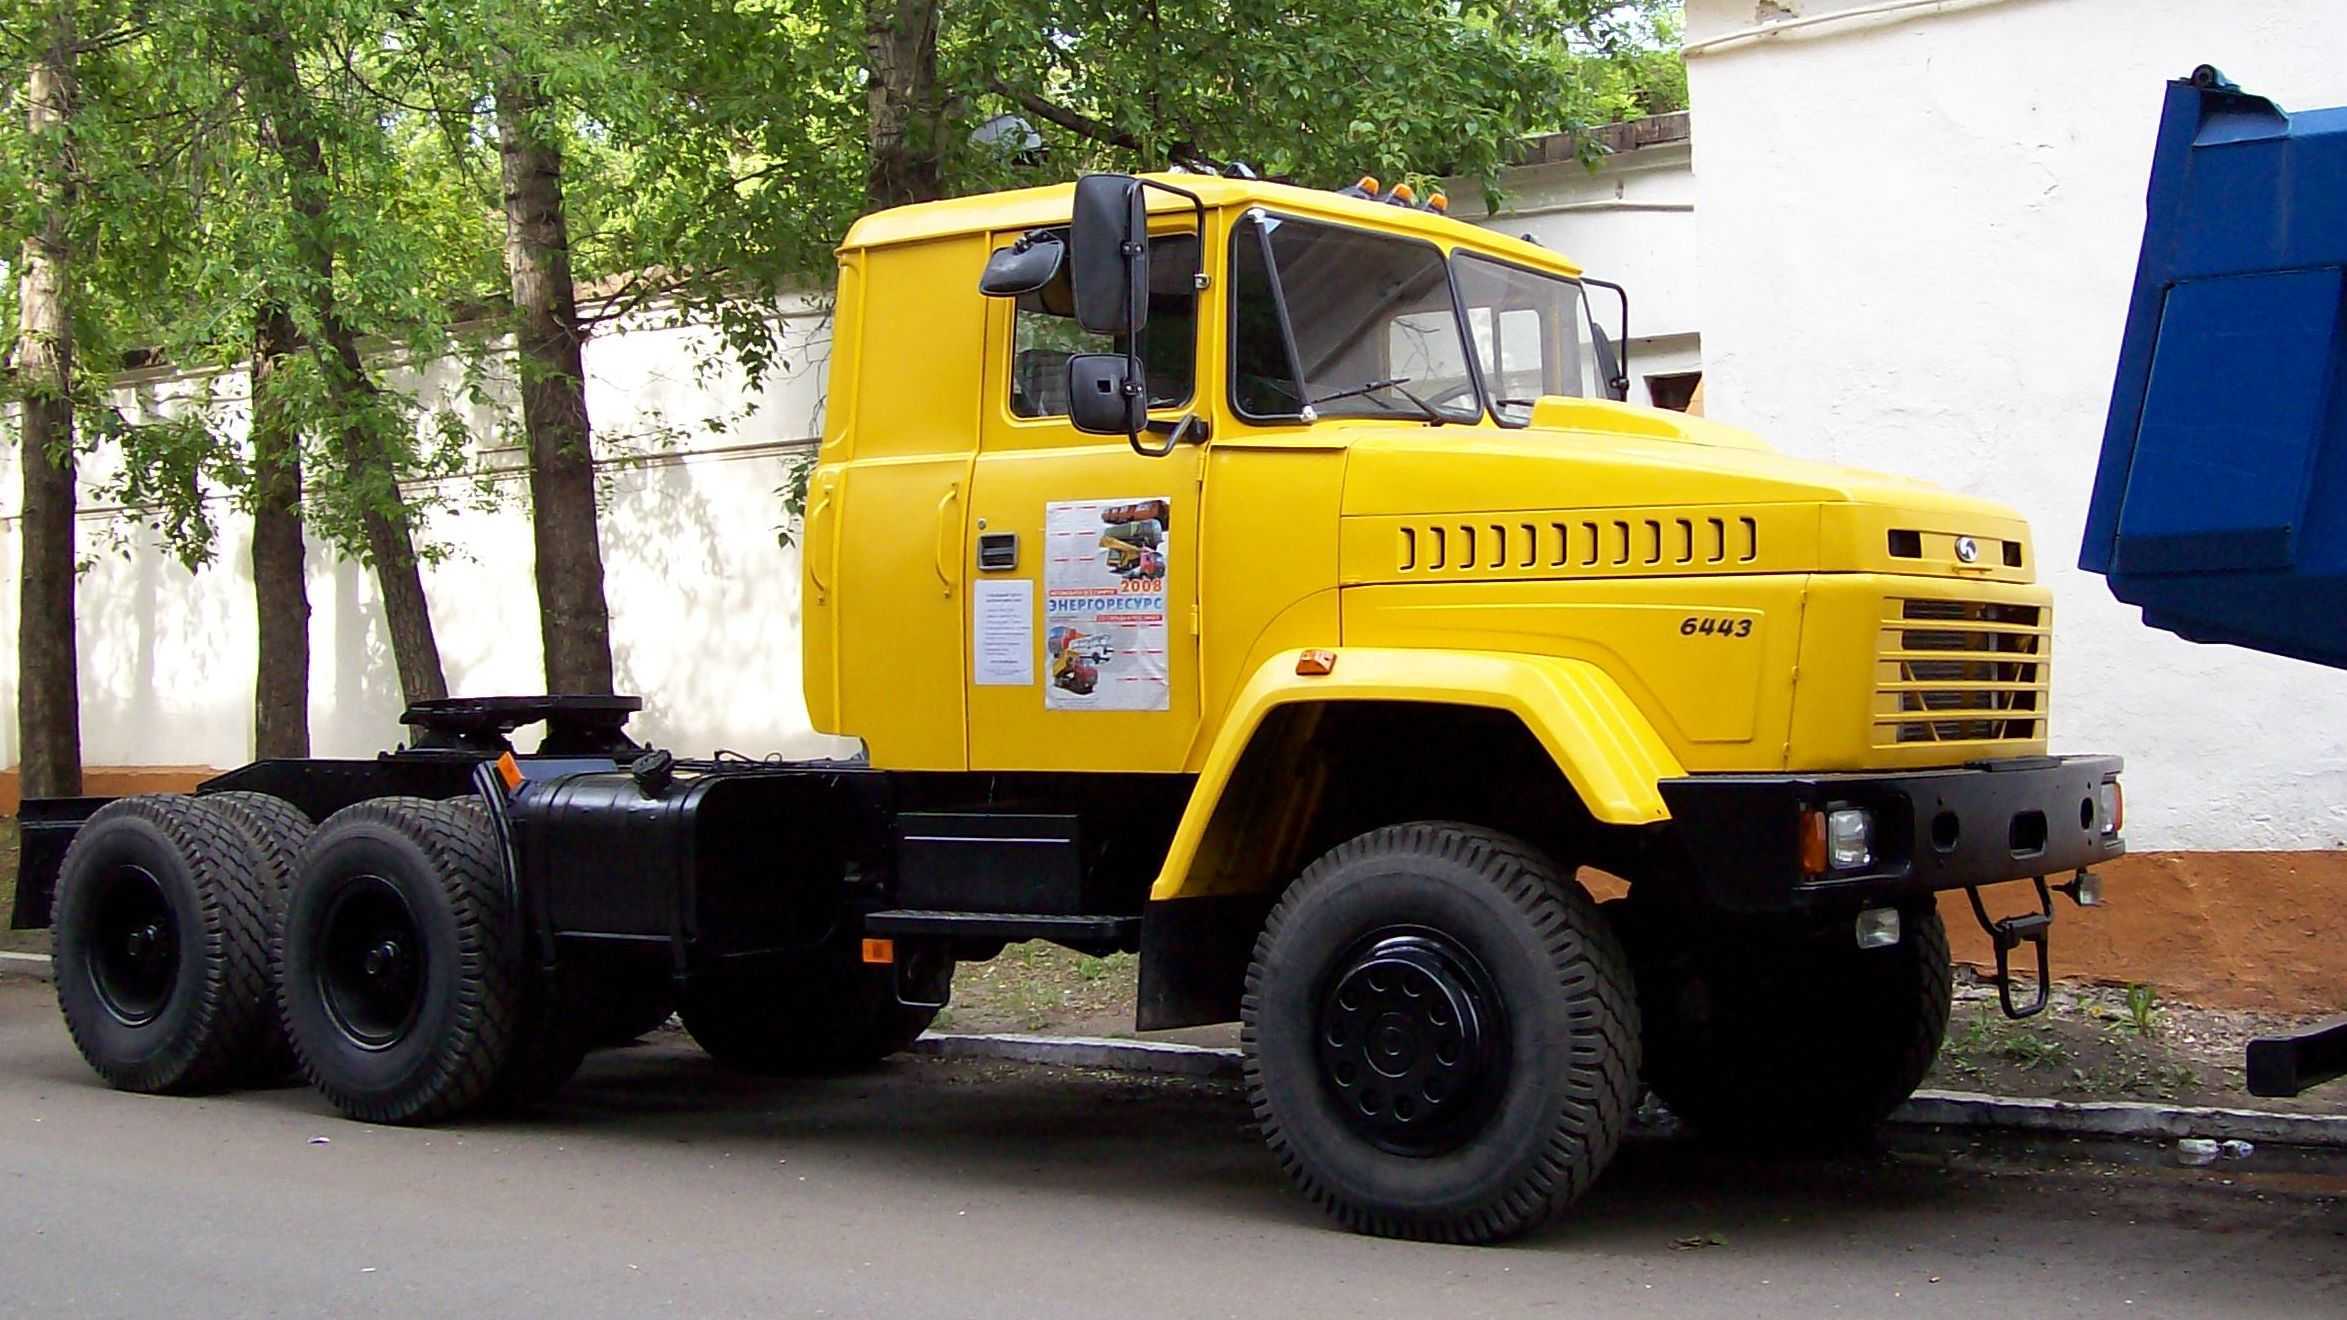 Модель КрАЗ-6443 – как раз из тех благополучных лет родом: первый седельный тягач данной марки был изготовлен в 1987-м году, а вот начало серийного производства пришлось на год 1992-й В модельном ряде завода КрАЗ-6443 является продолжением семейства КрАЗ-